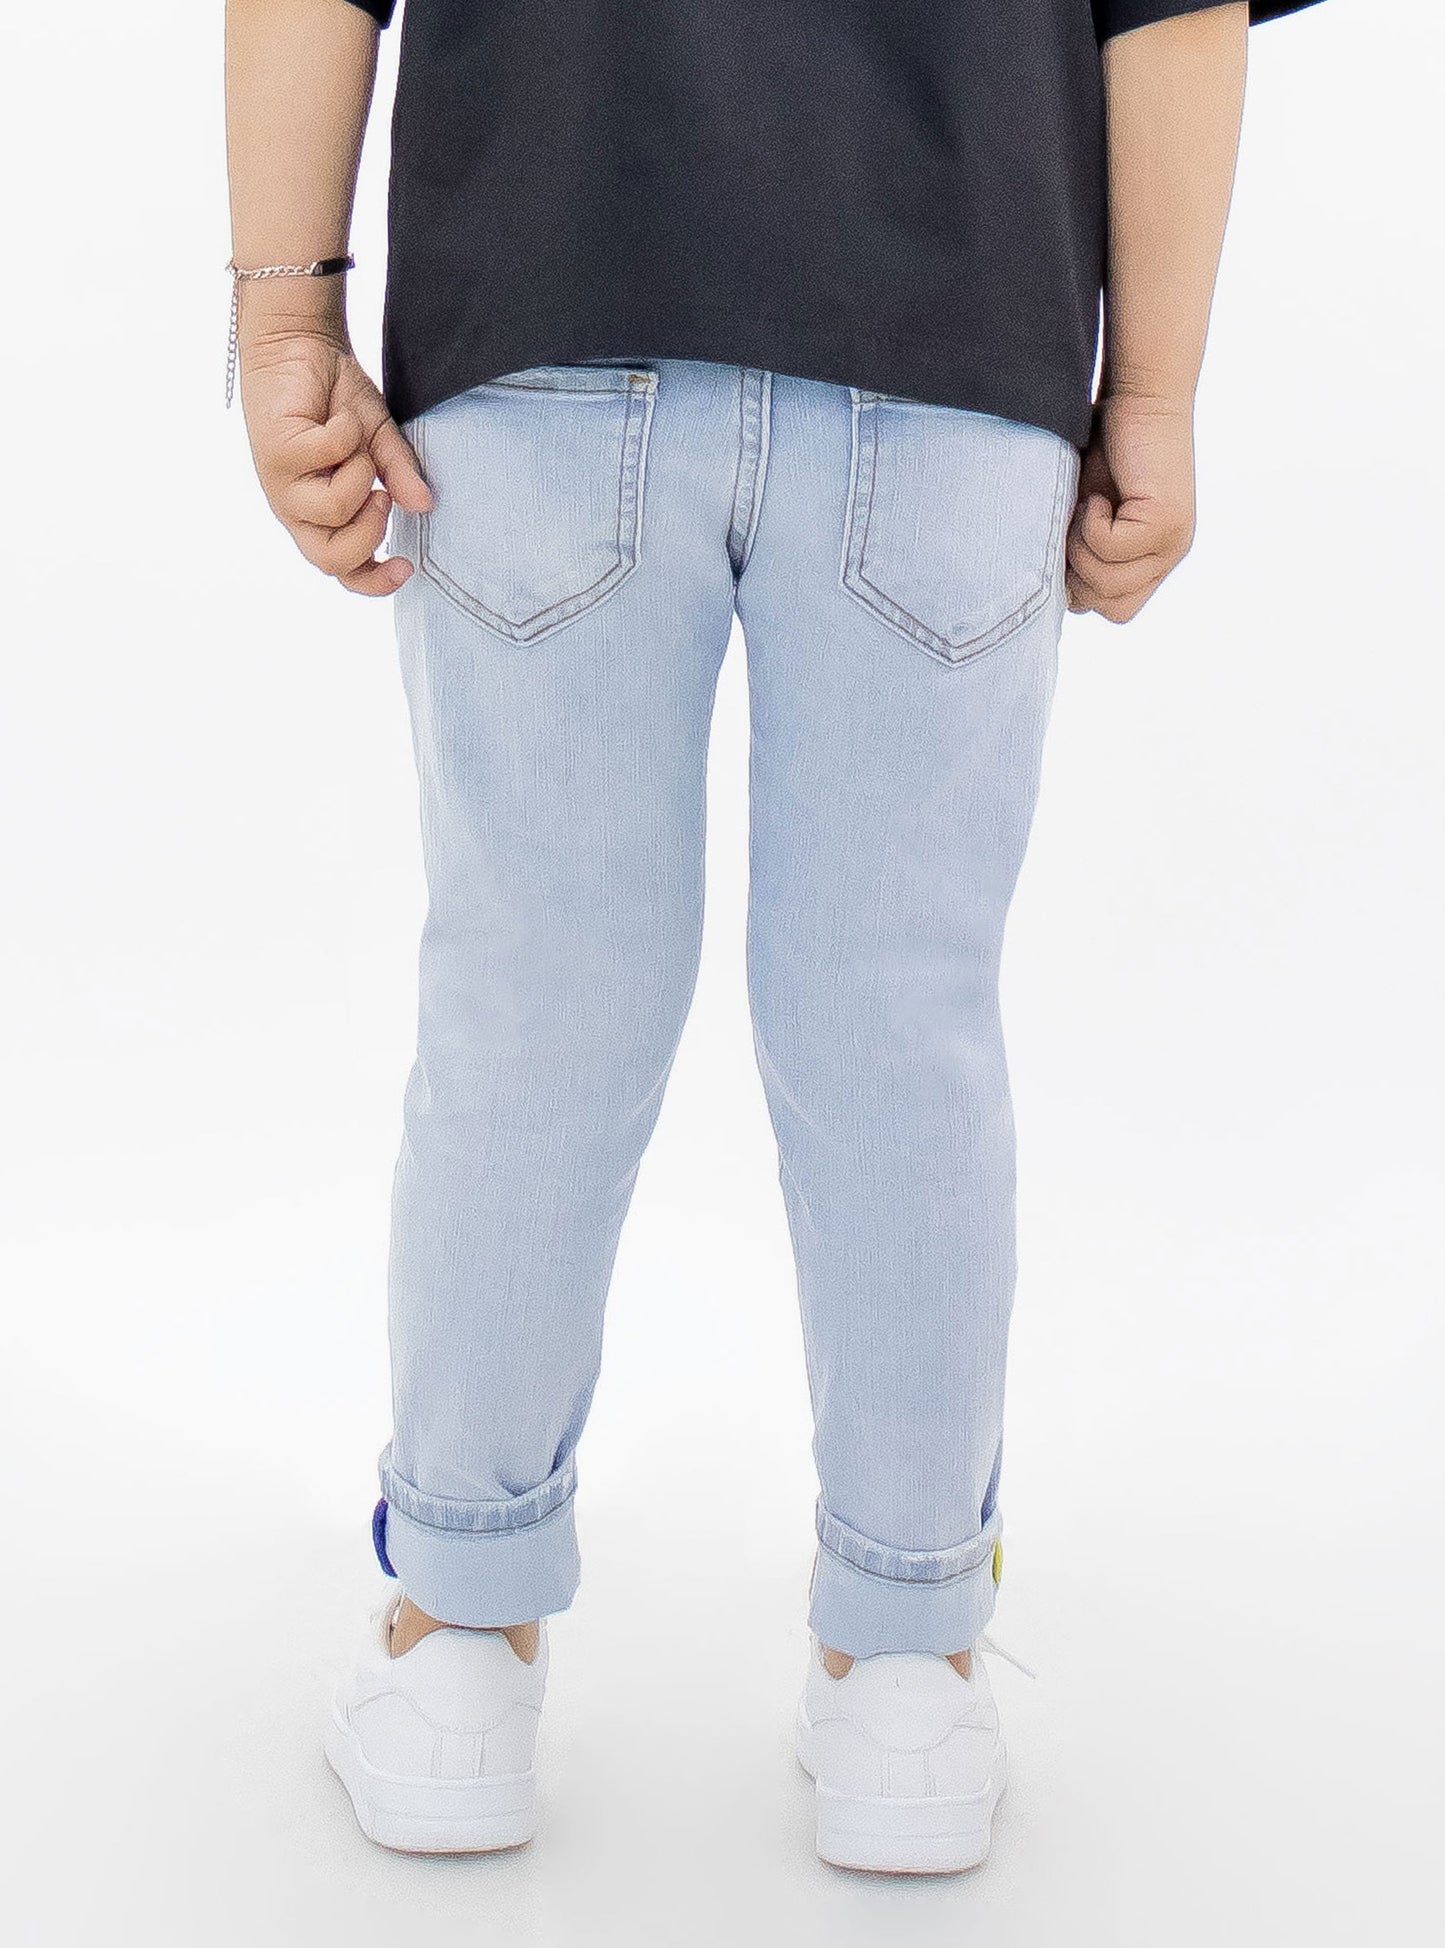 Jeans skinny de color azul claro con estampado